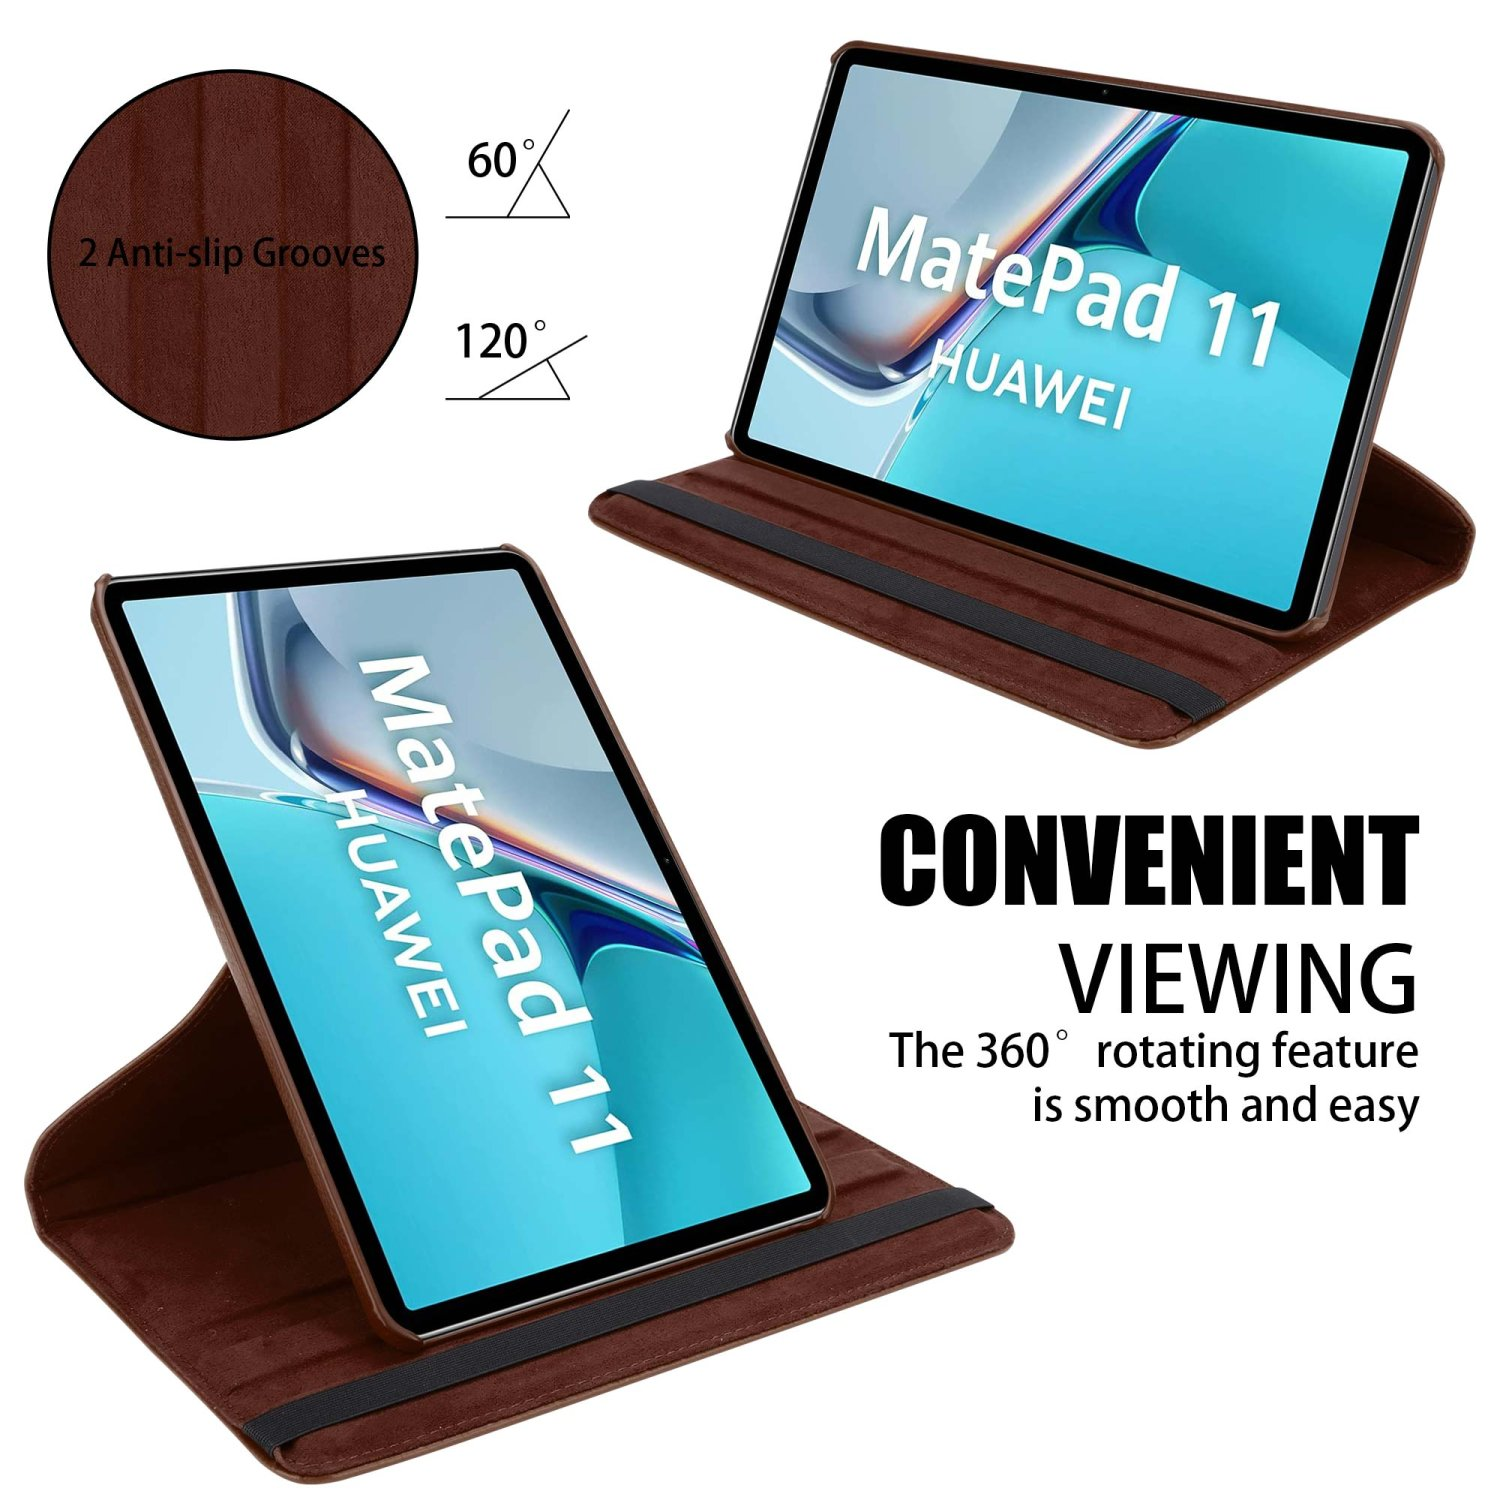 CADORABO Tablet Hülle im Tablethülle Huawei PILZ Book BRAUN für Style Bookcover Kunstleder